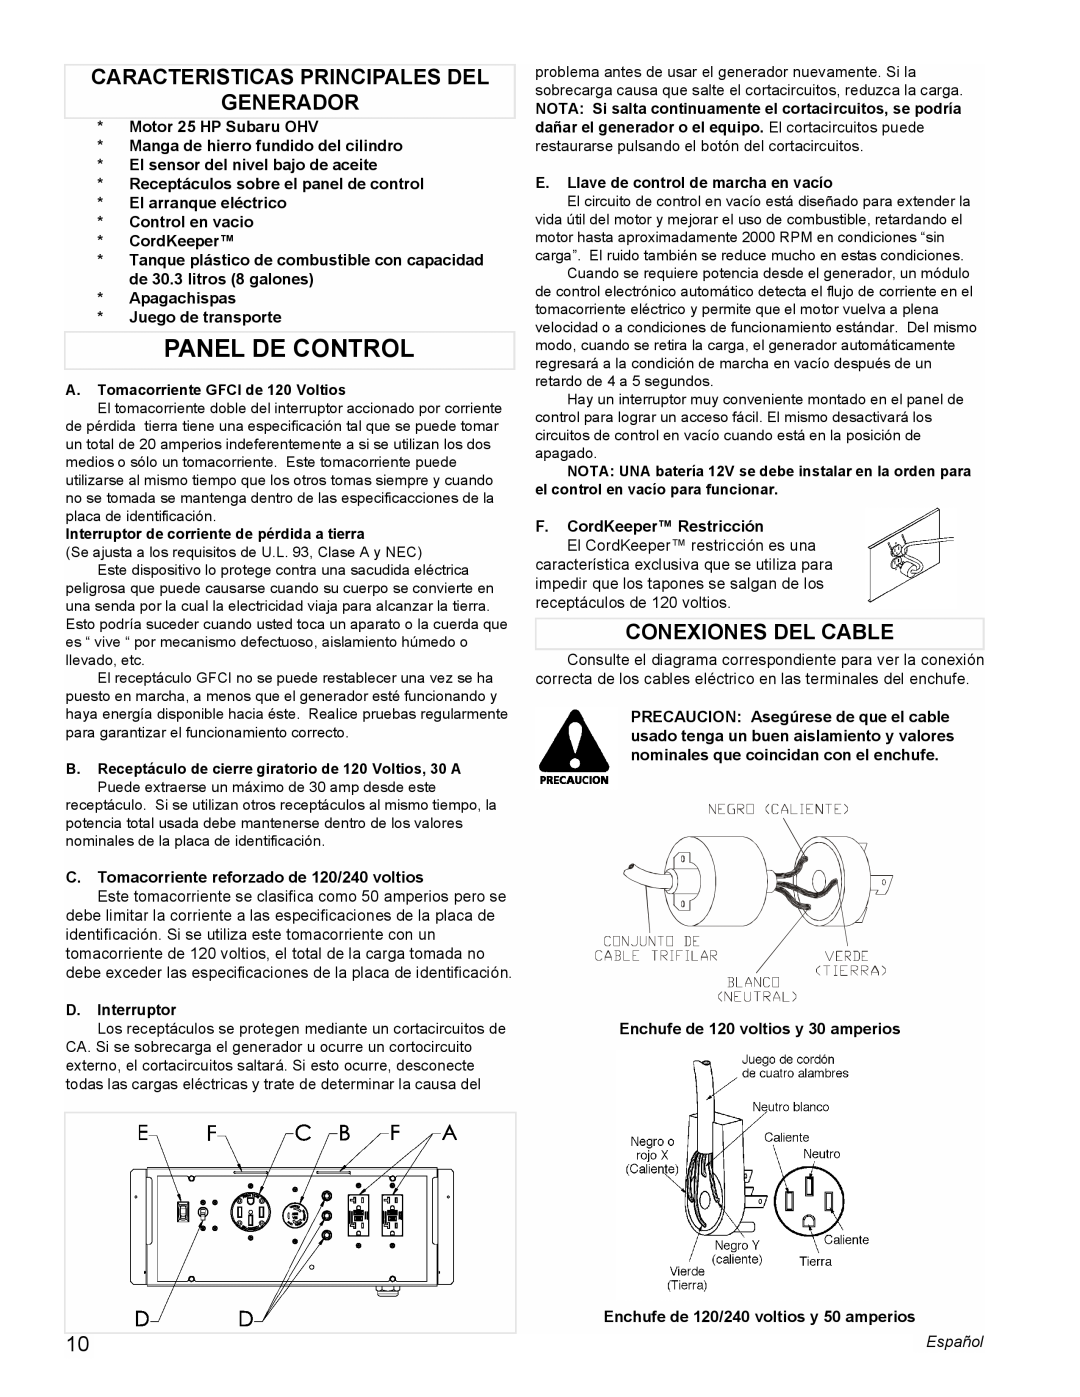 Powermate PM0601350 manual Panel De Control, Caracteristicas Principales Del Generador, Conexiones Del Cable 